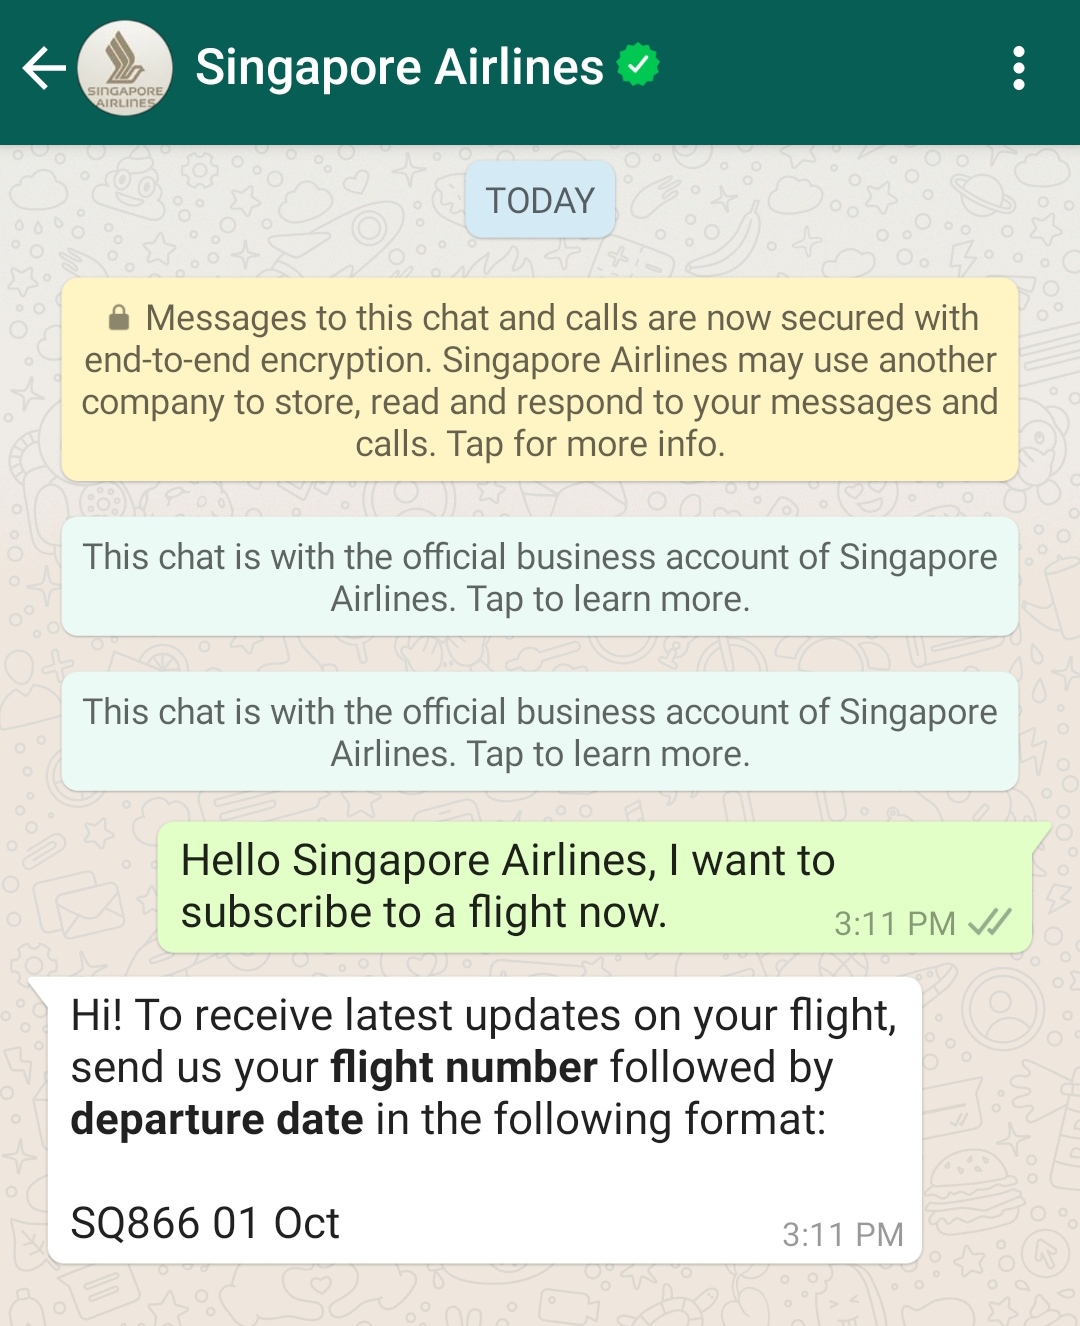 Companhias aéreas e empresas de viagem podem economizar recursos automatizando suas conversas no WhatsApp